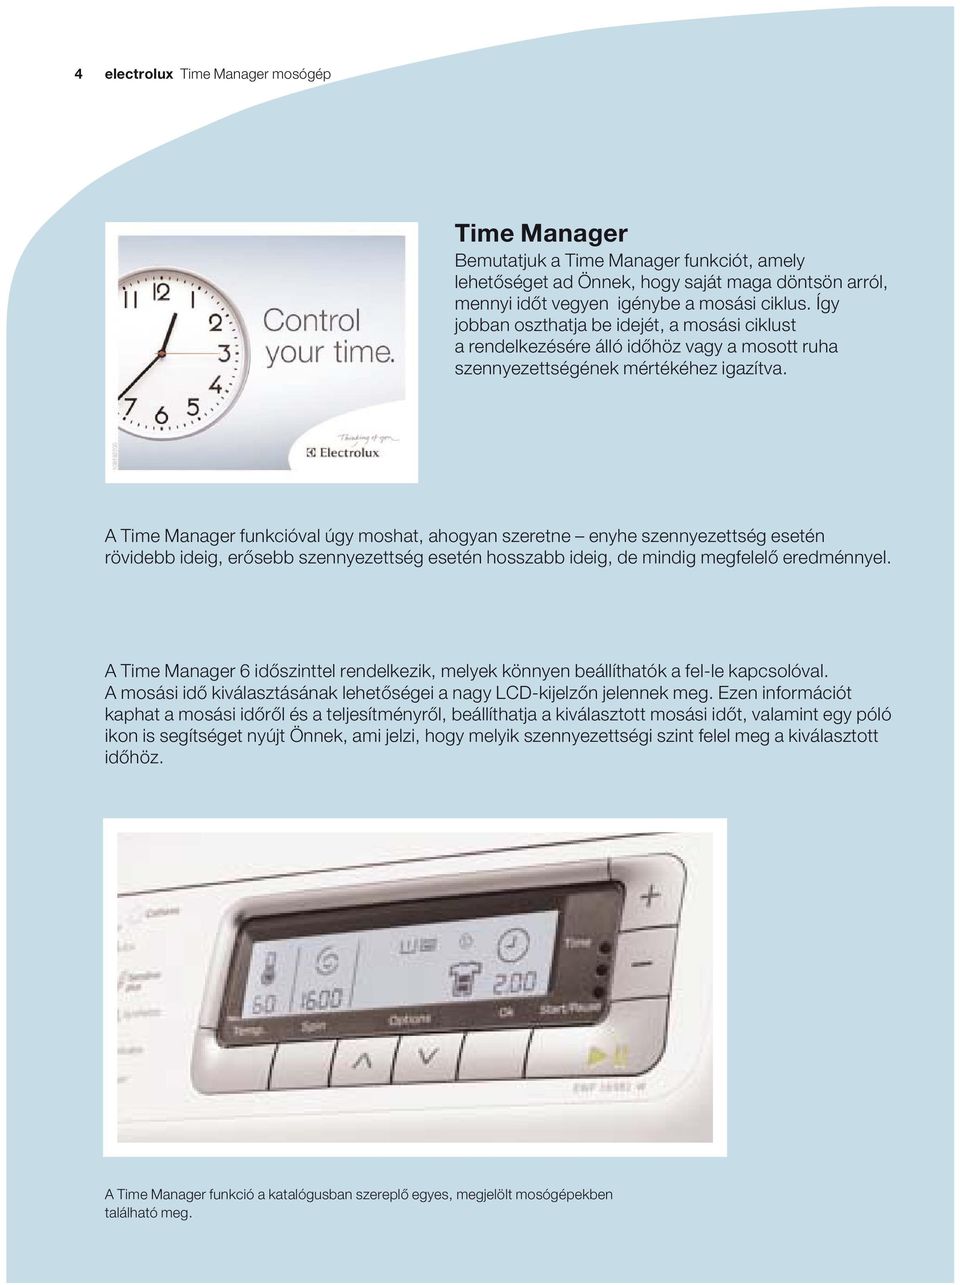 Time Manager funkcióval úgy moshat, ahogyan szeretne enyhe szennyezettség esetén rövidebb ideig, erősebb szennyezettség esetén hosszabb ideig, de mindig megfelelő eredménnyel.